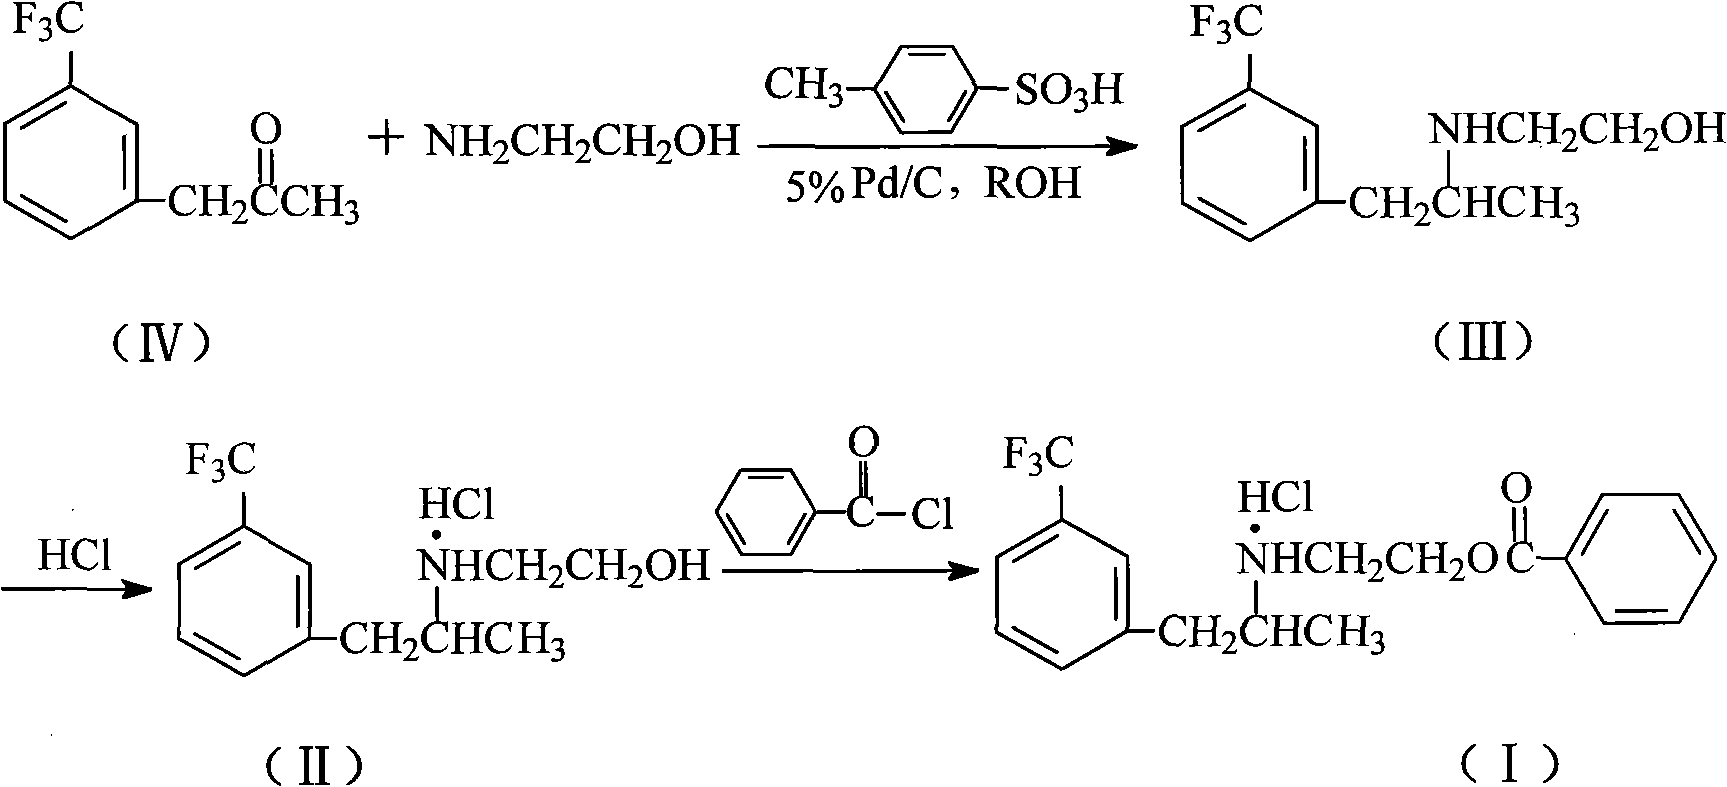 Method for preparing benzoic-2-[[1-methyl-2-[3-(trifluoromethyl)-phenyl] ethyl] amido] ethyl ester hydrochlorate